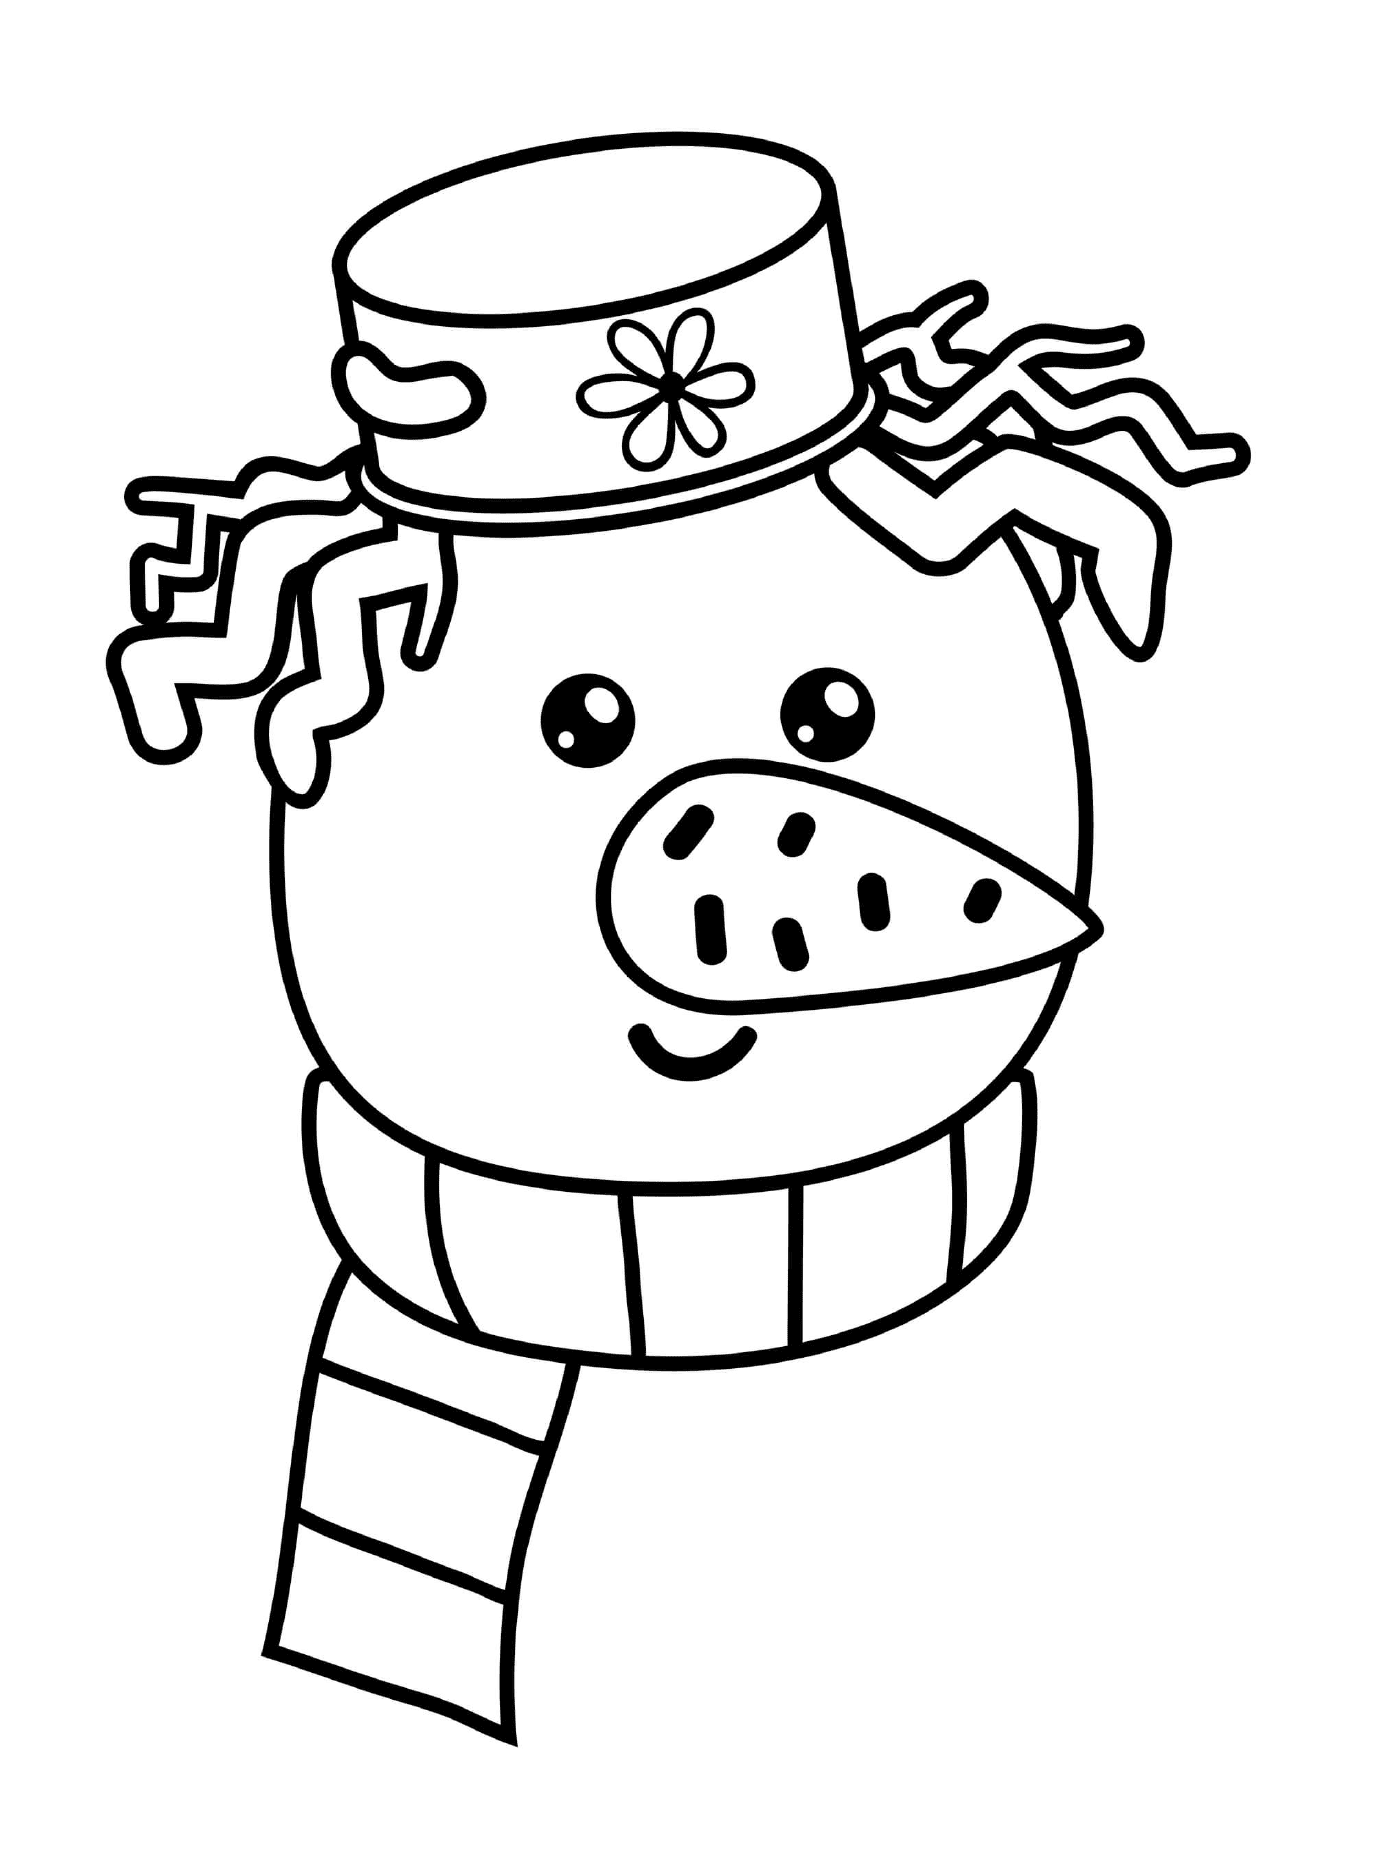   La tête d'un bonhomme de neige avec un chapeau et un foulard 